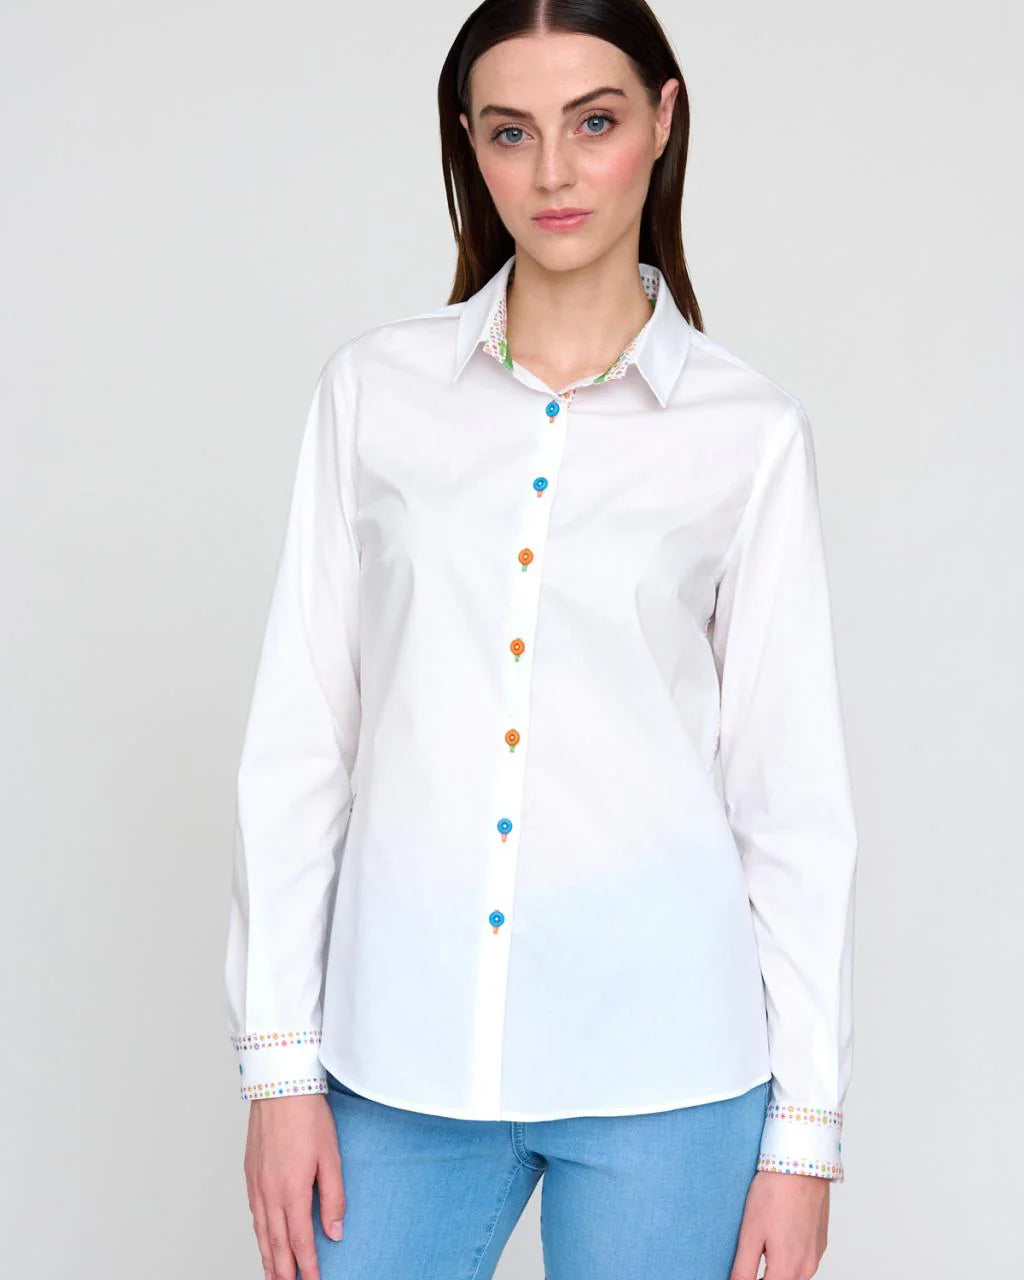 Bariloche Condado White Stretch Cotton Shirt With Multi-colour Buttons